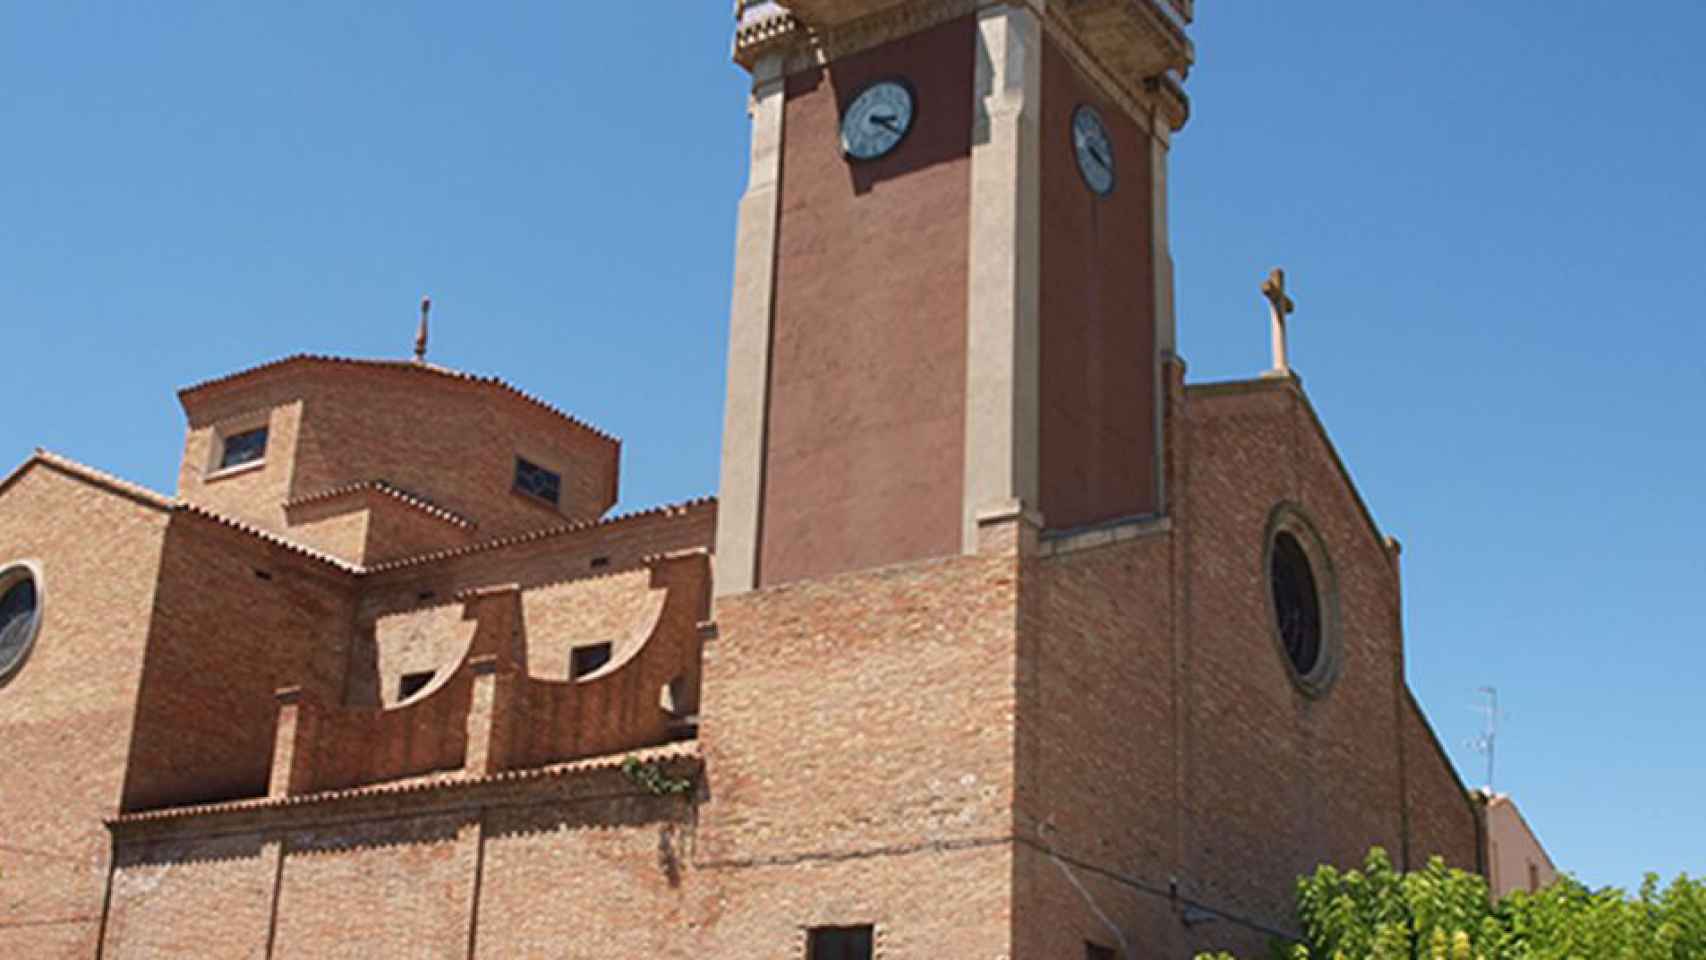 El municipio de Bell-lloc d'Urgell / CG